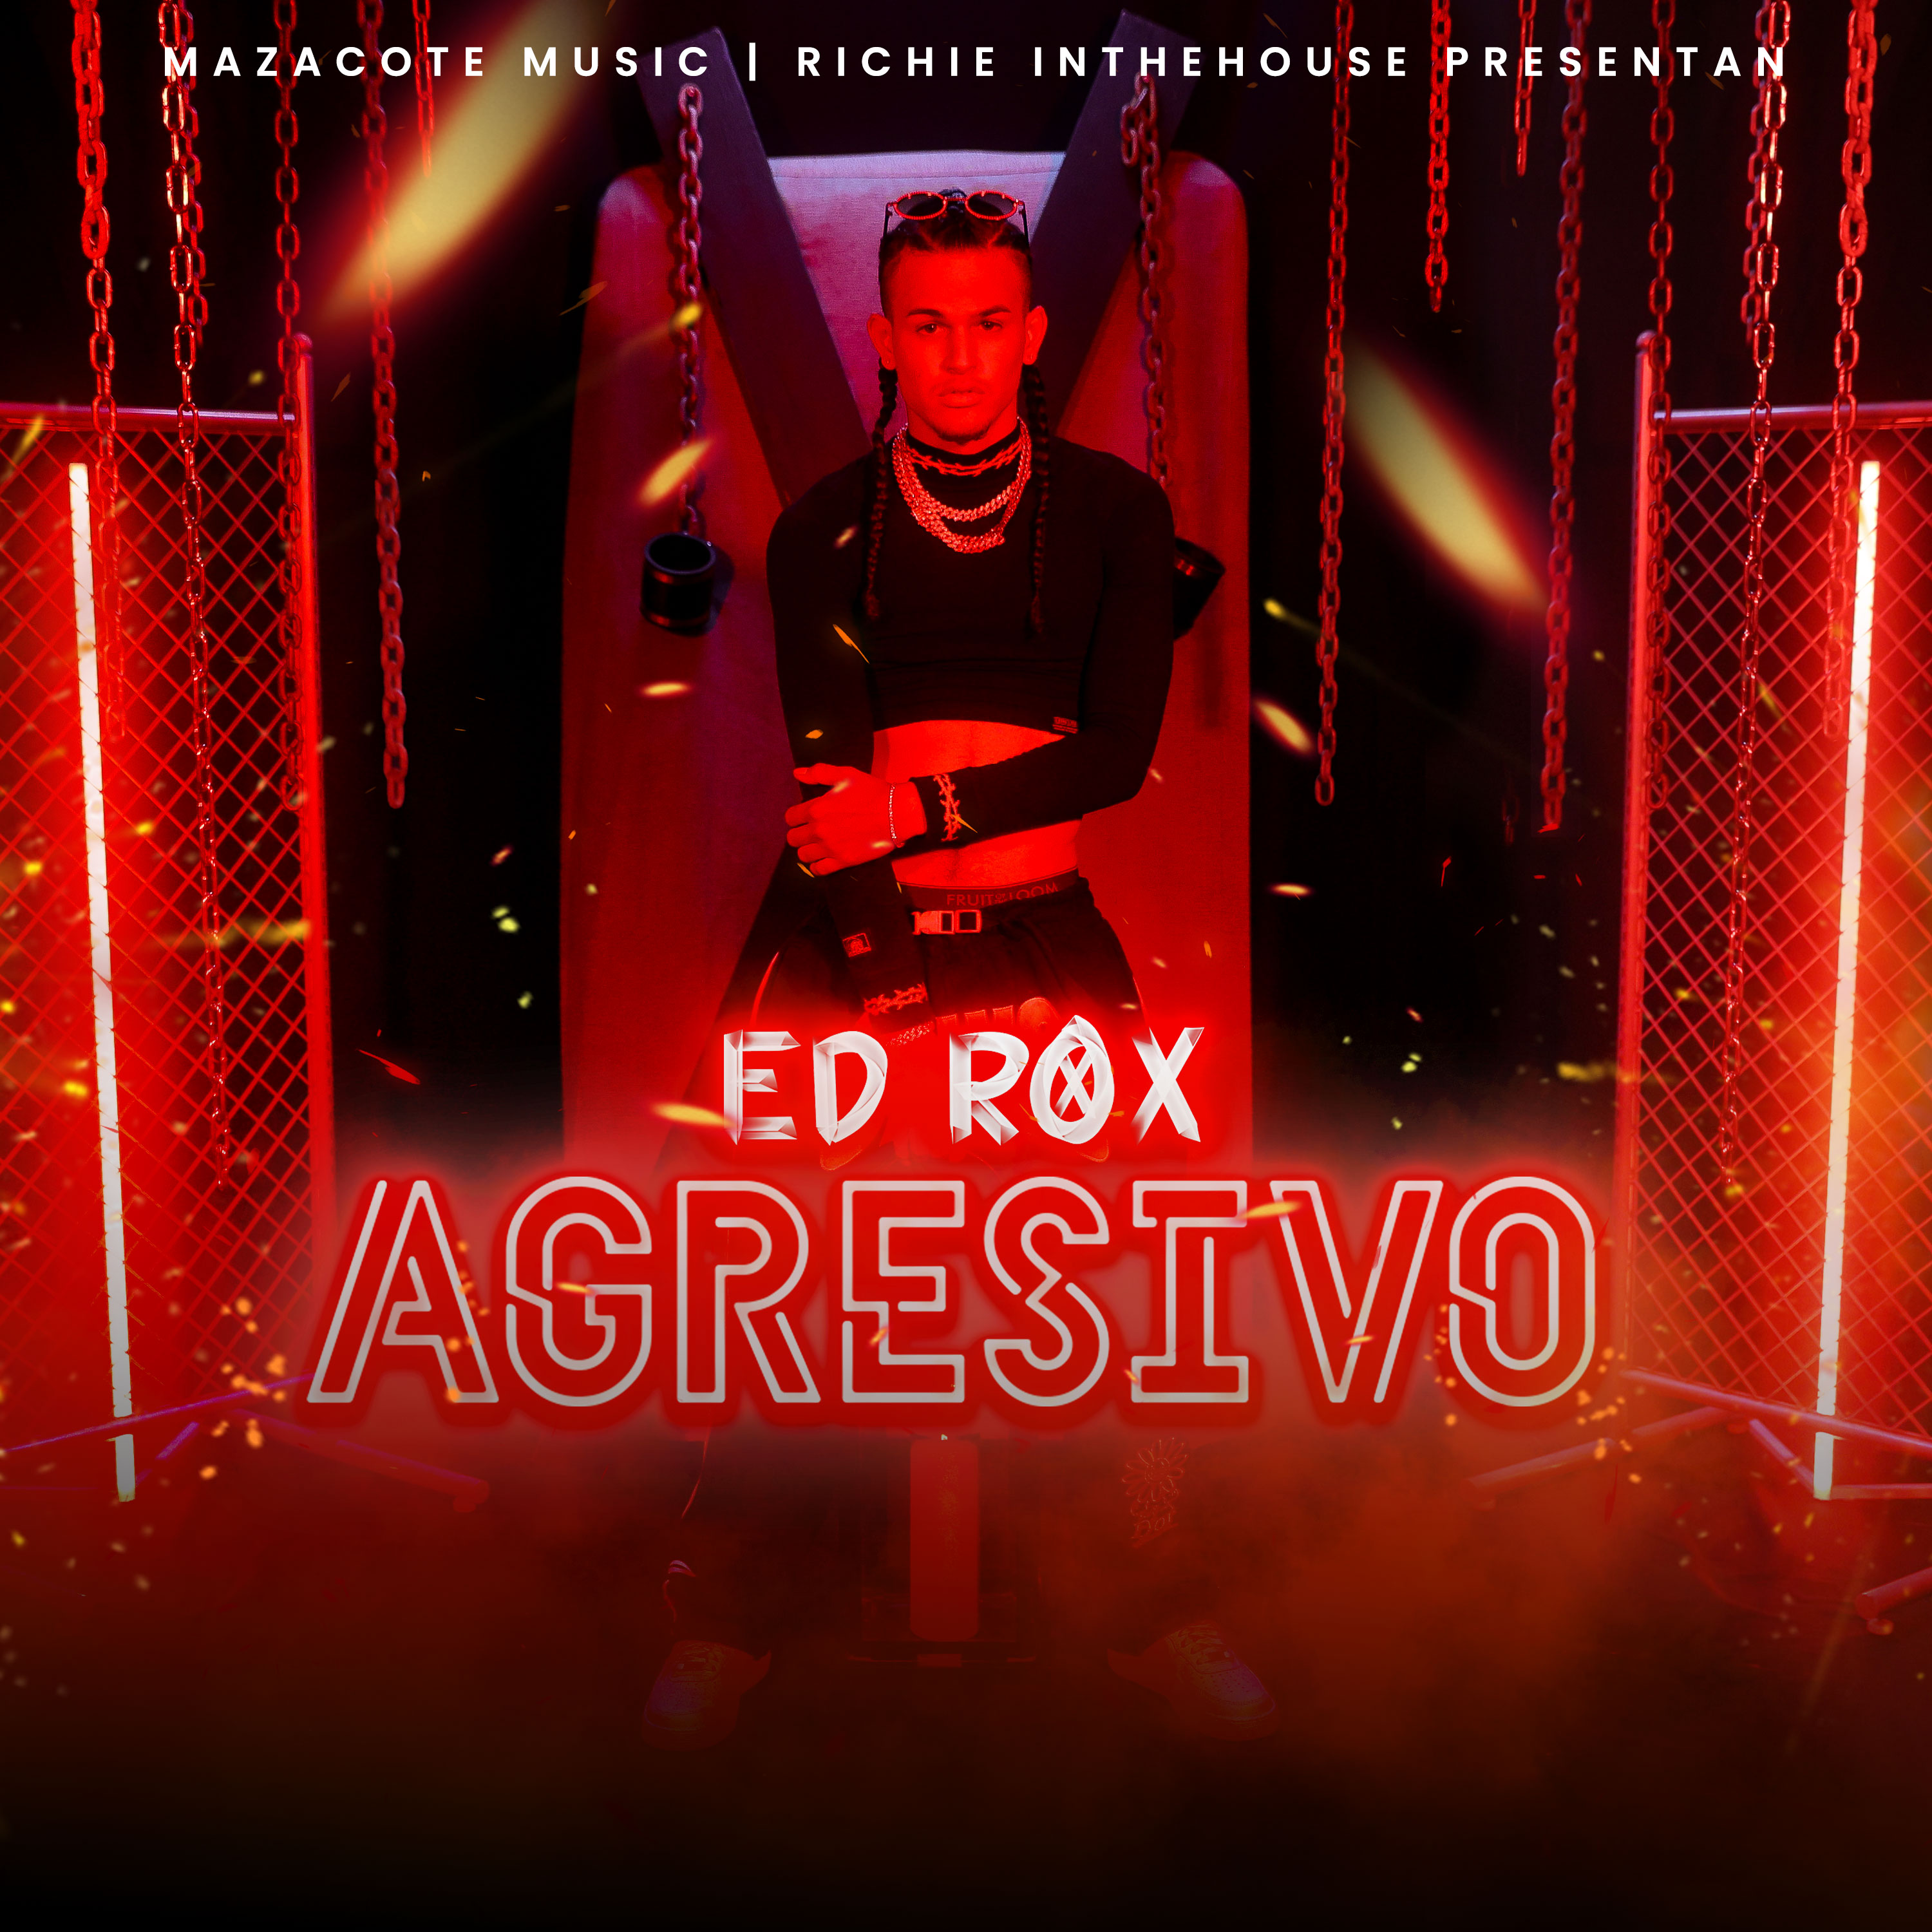 El artista Ed Rox nos pone a bailar al ritmo del reggaetón con su nuevo lanzamiento “AGRESIVO”.  